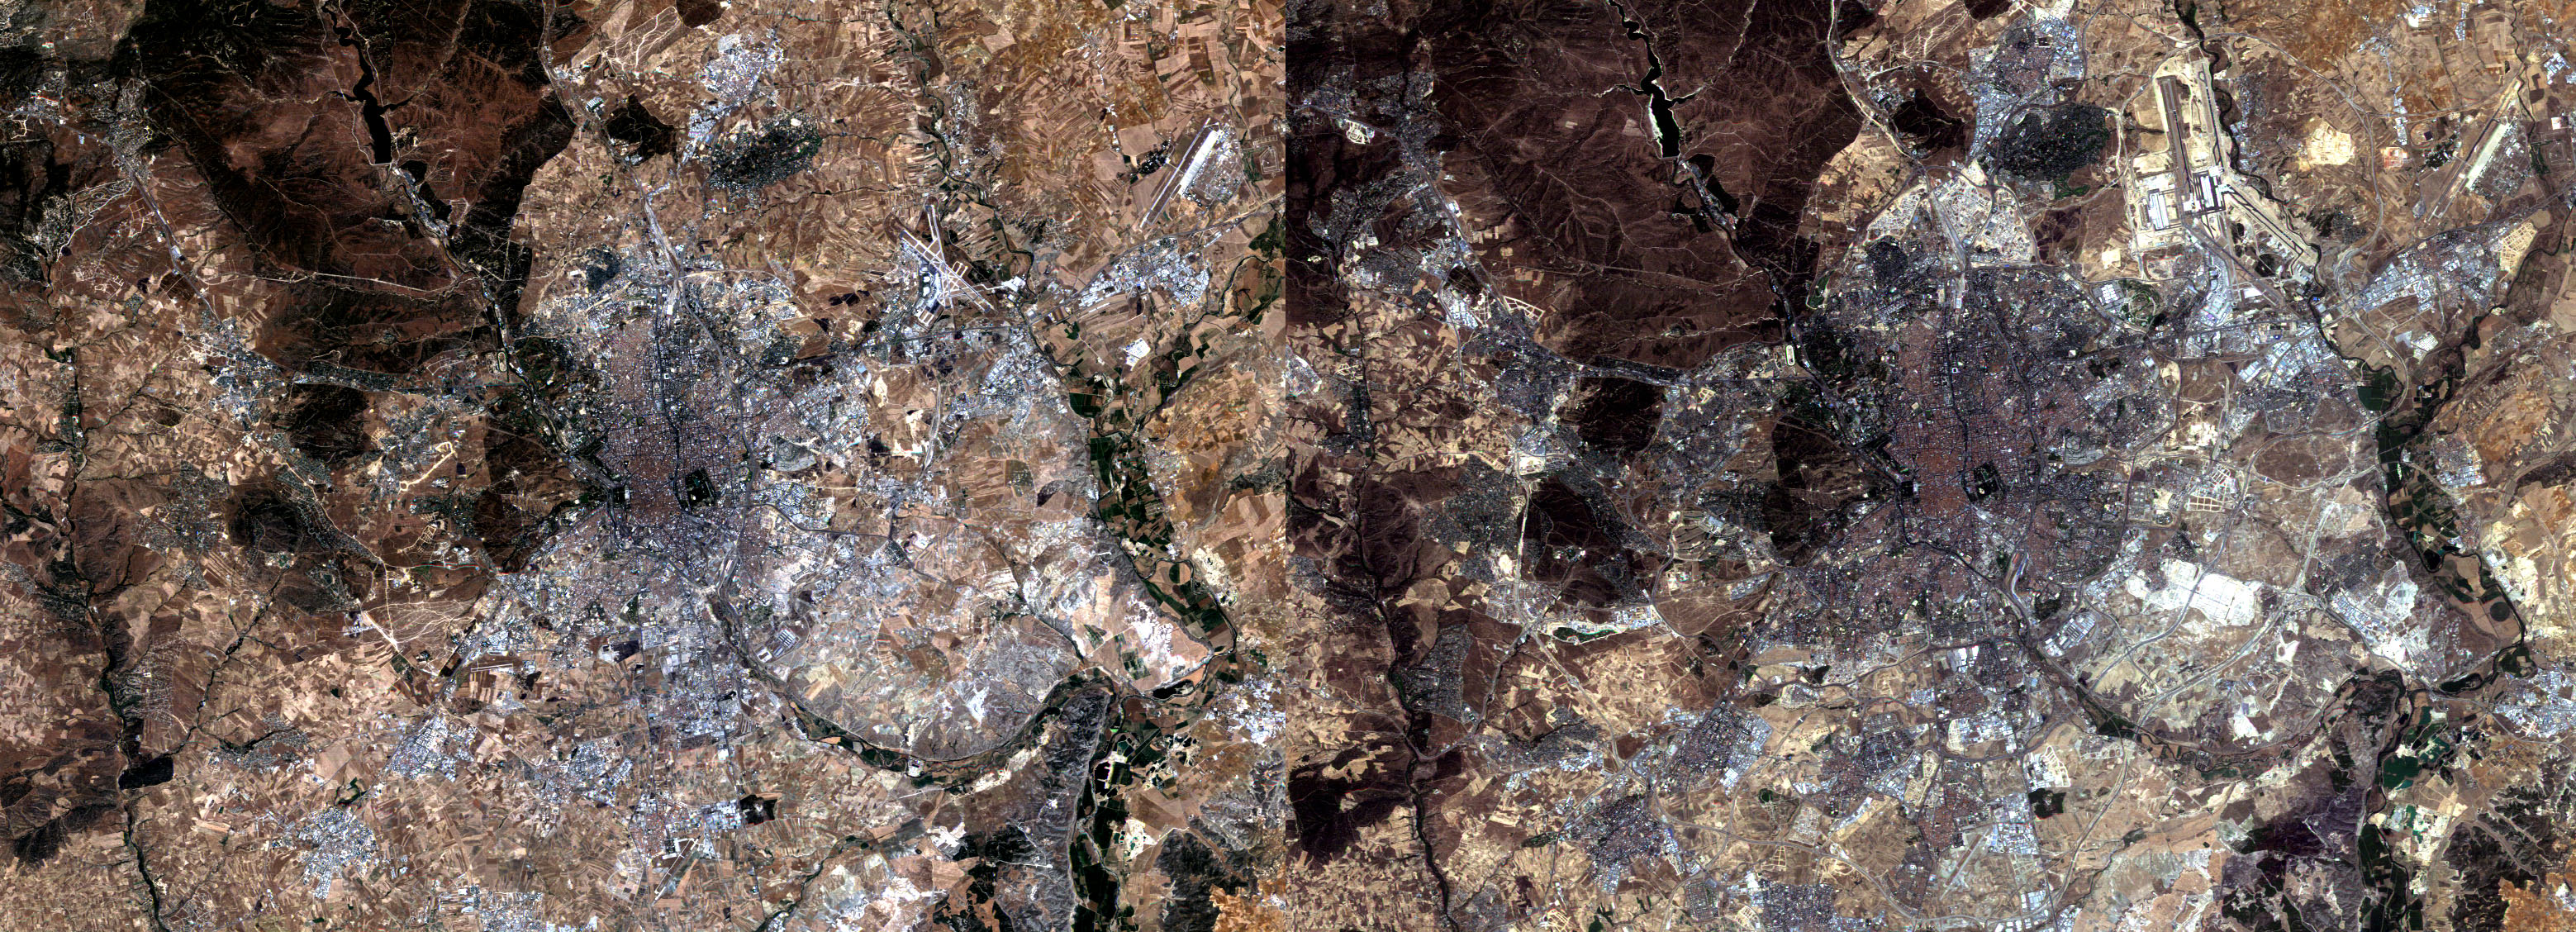 Madrid en 1984 y 2004